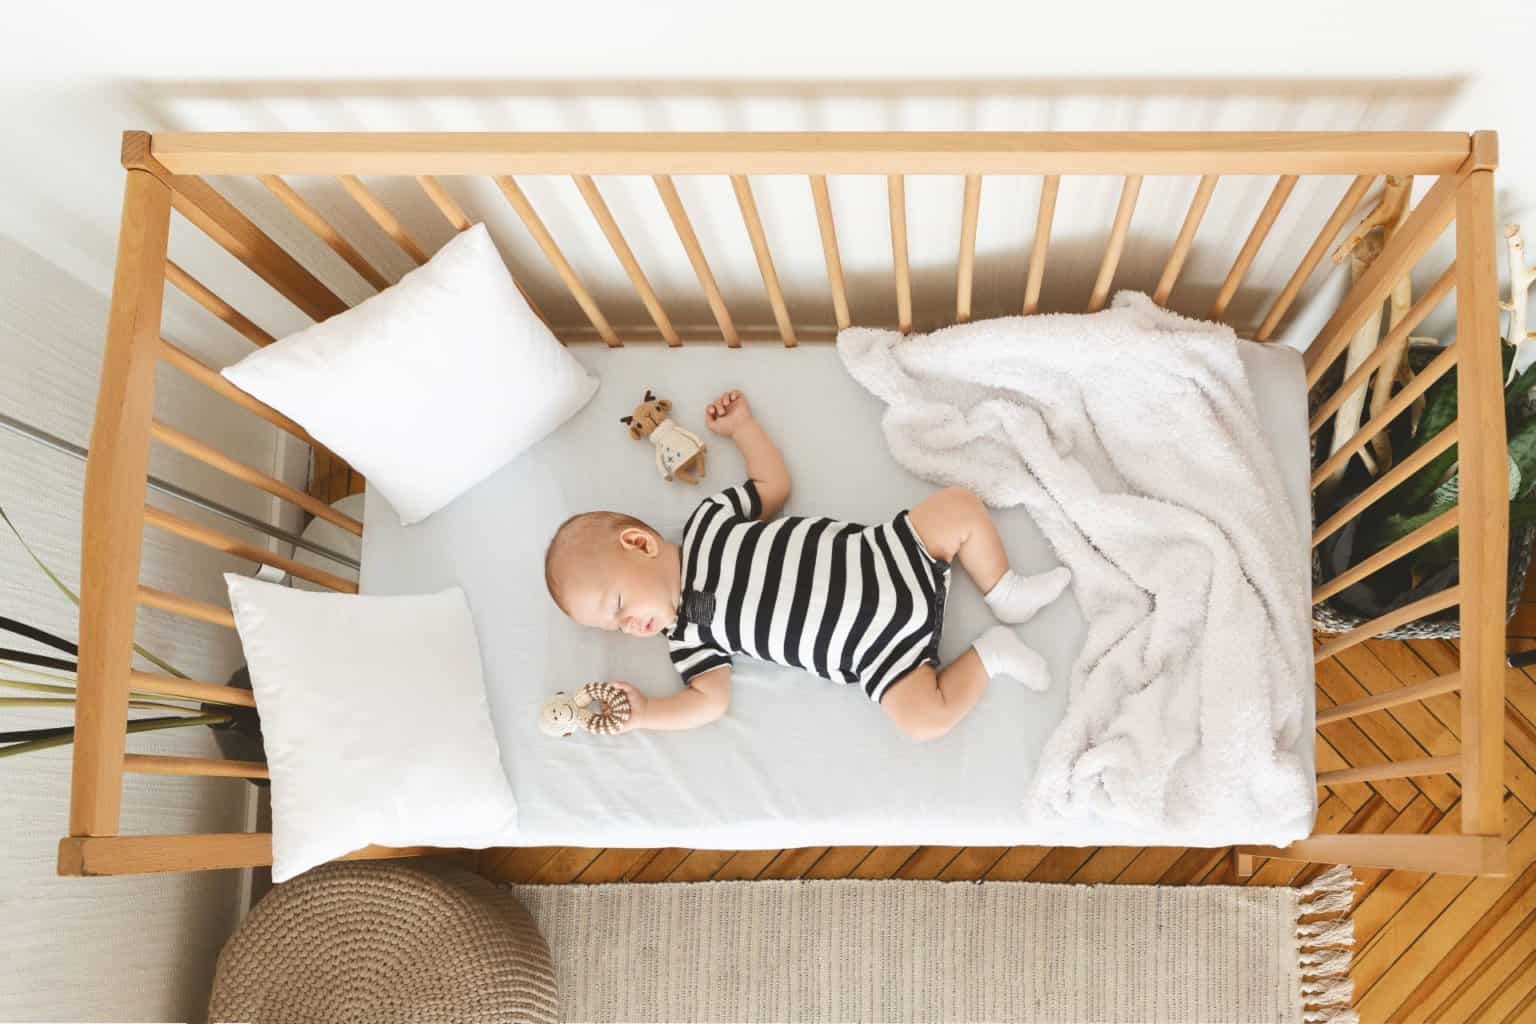 Beistellbett: So schläft das Baby sicher